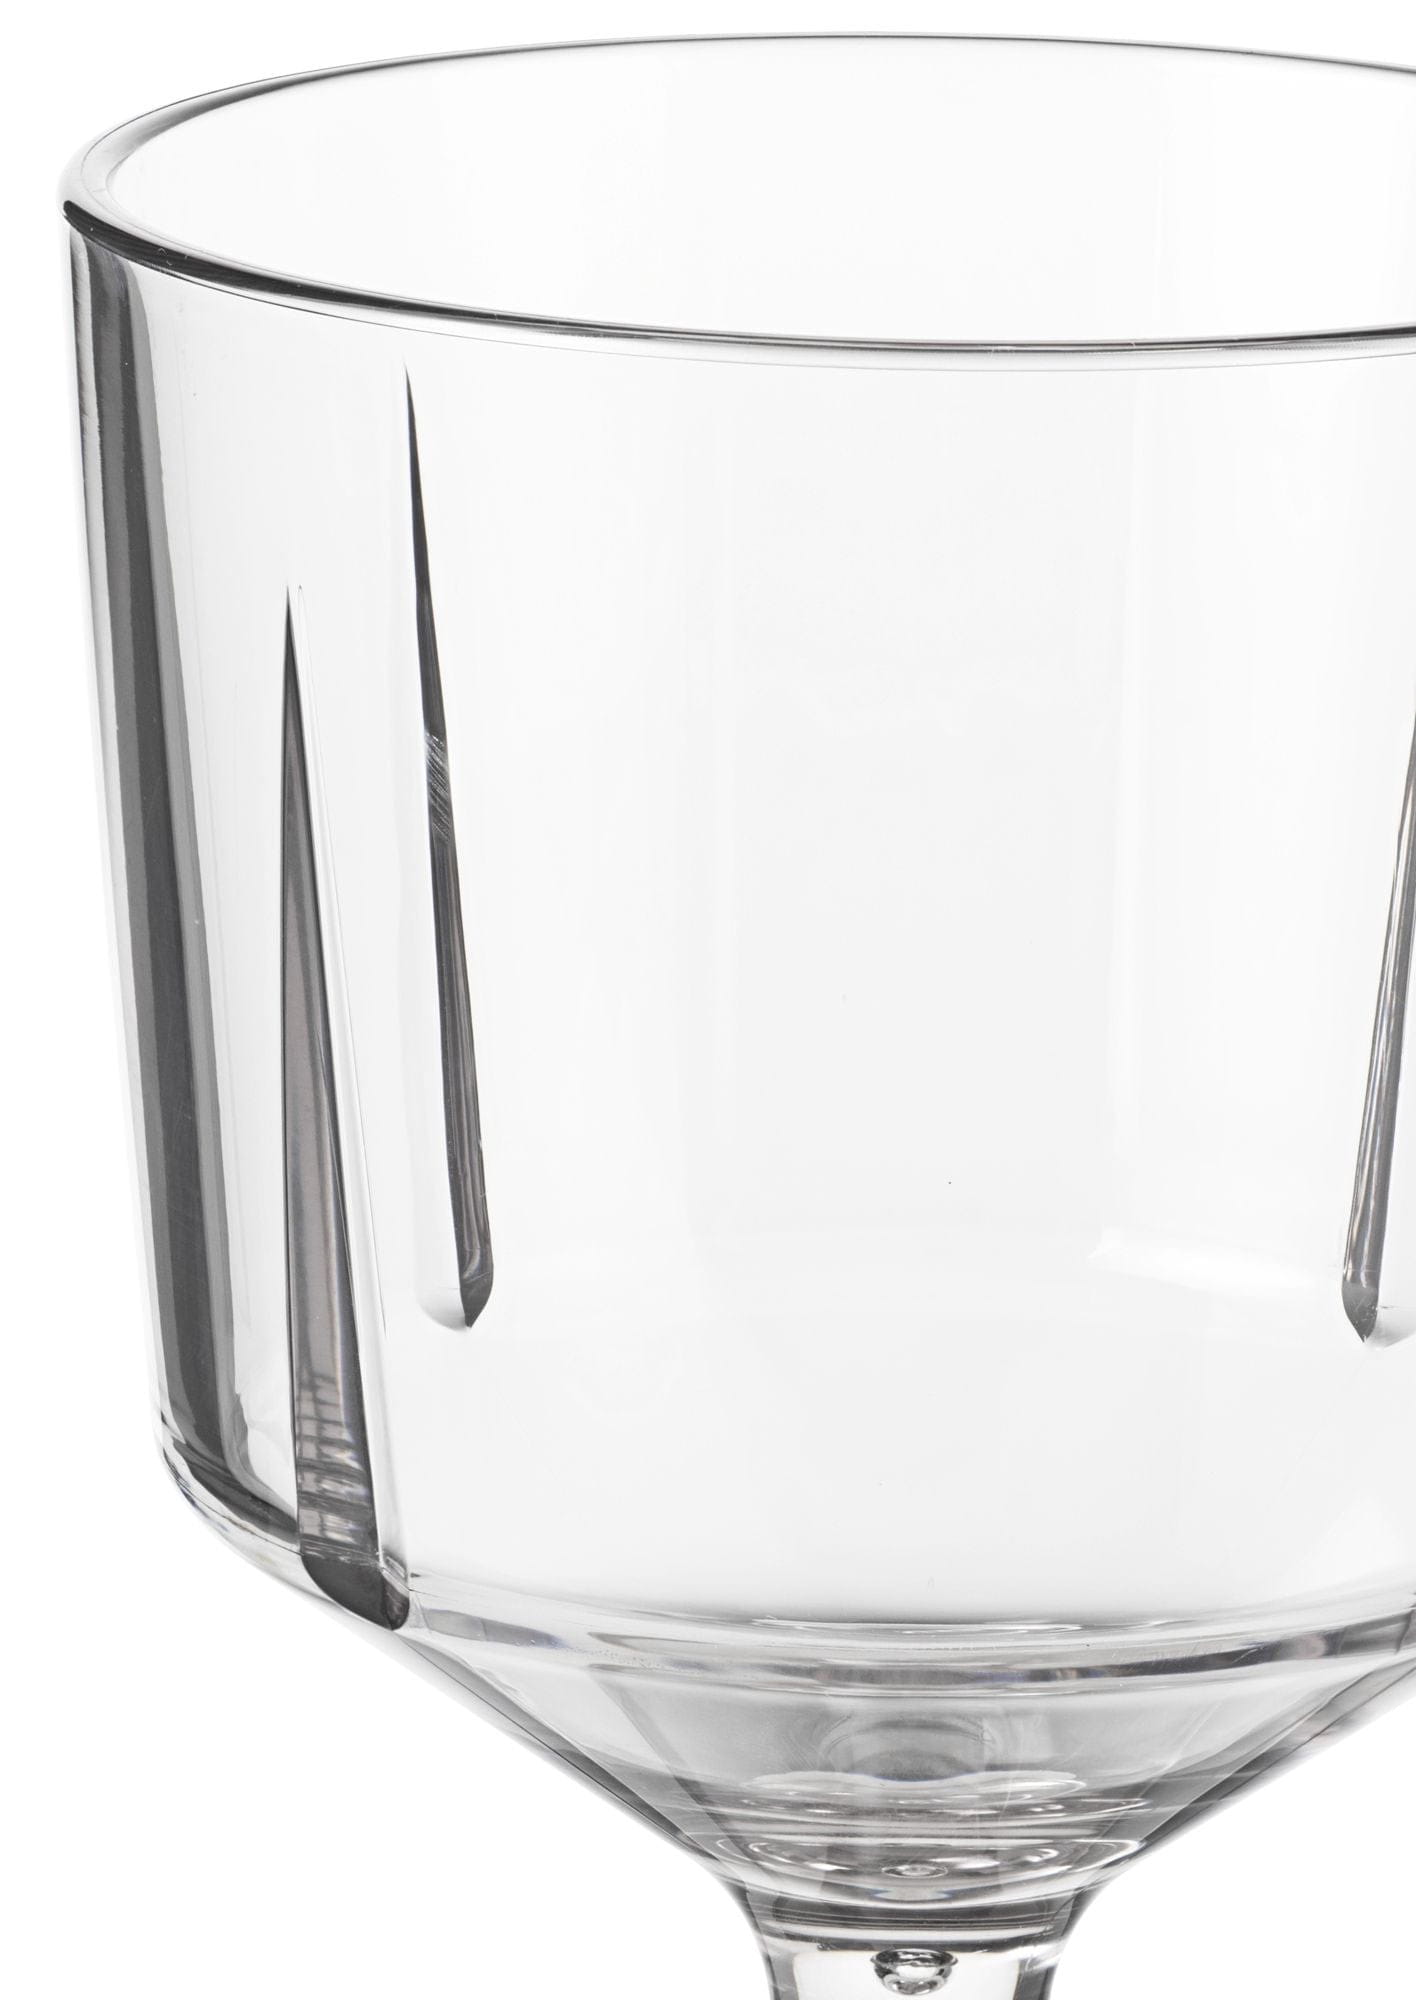 Rosendahl GC Outdoor -Glas -Set von 260 ml, klar